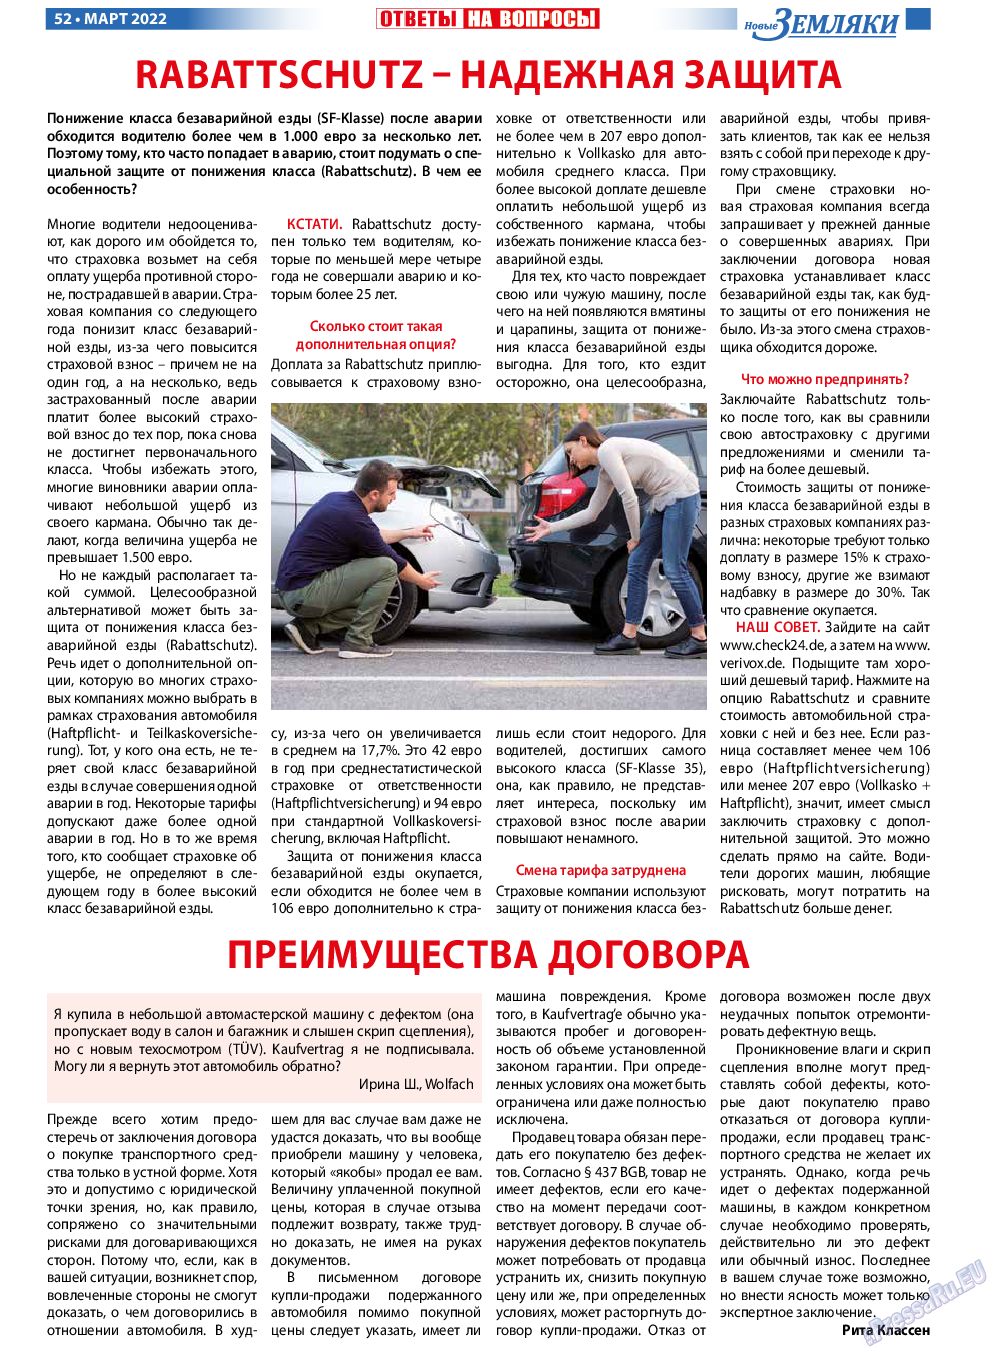 Новые Земляки, газета. 2022 №3 стр.52